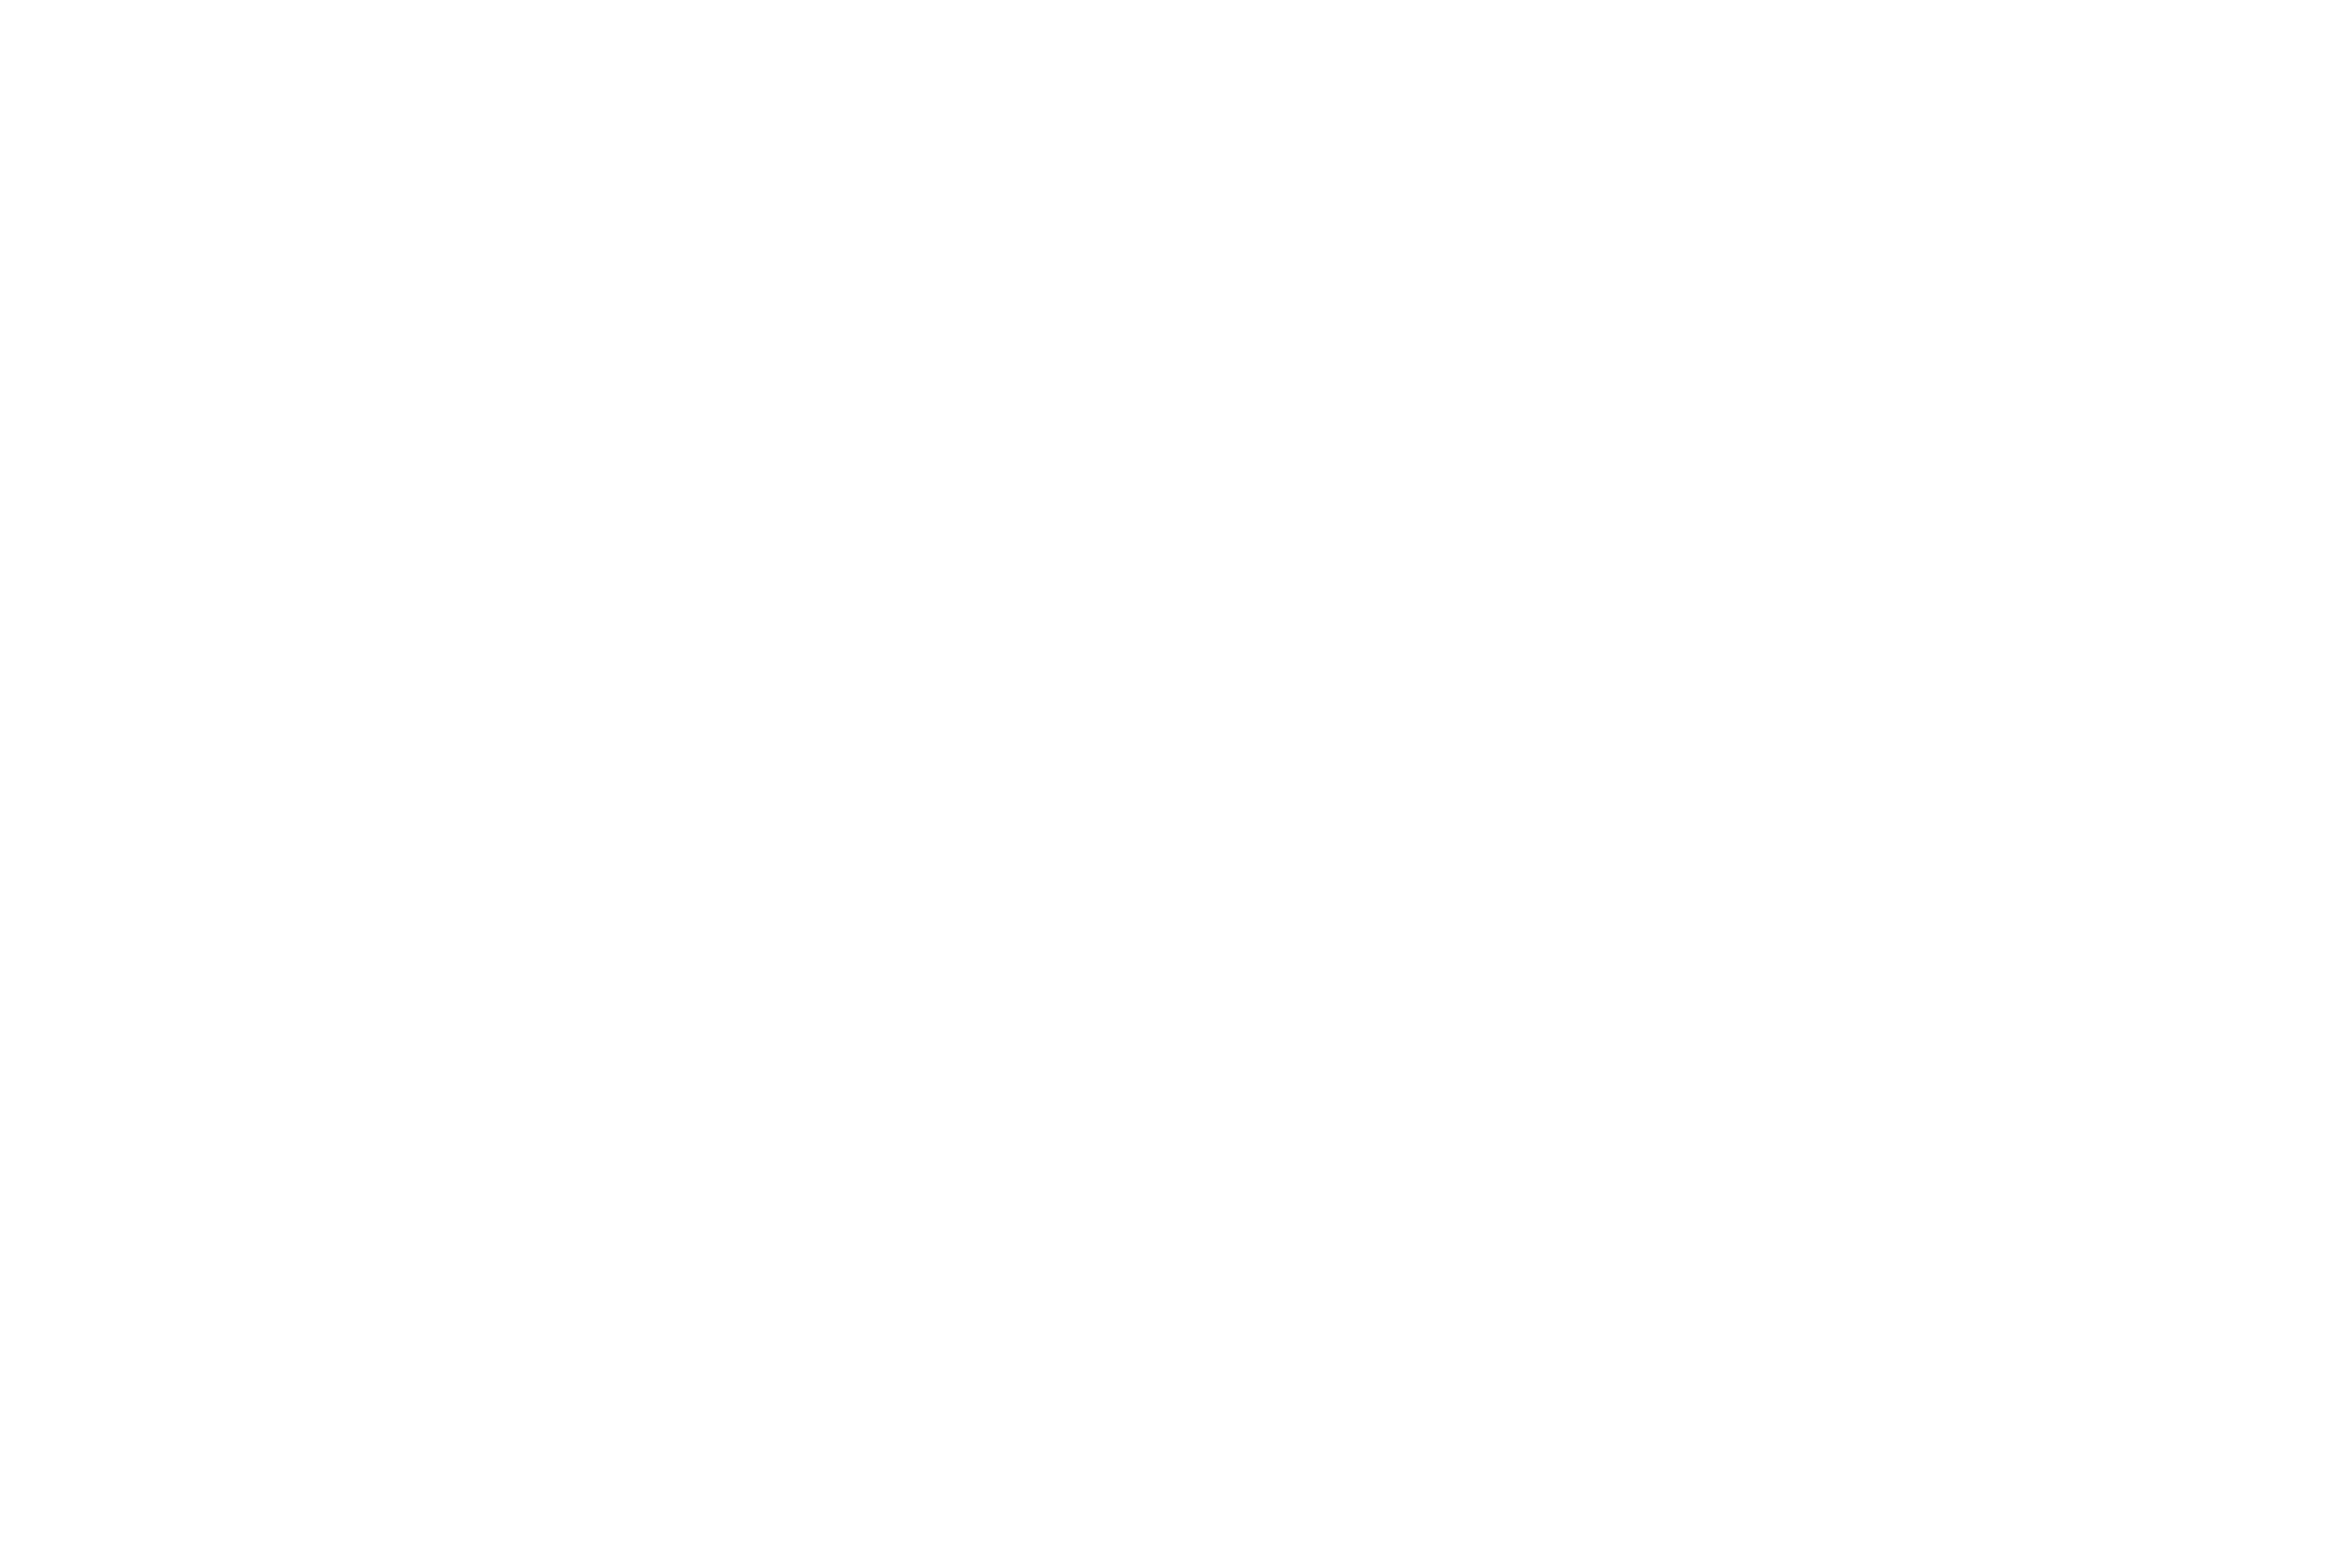 Adam Migdoł | fotomigdol